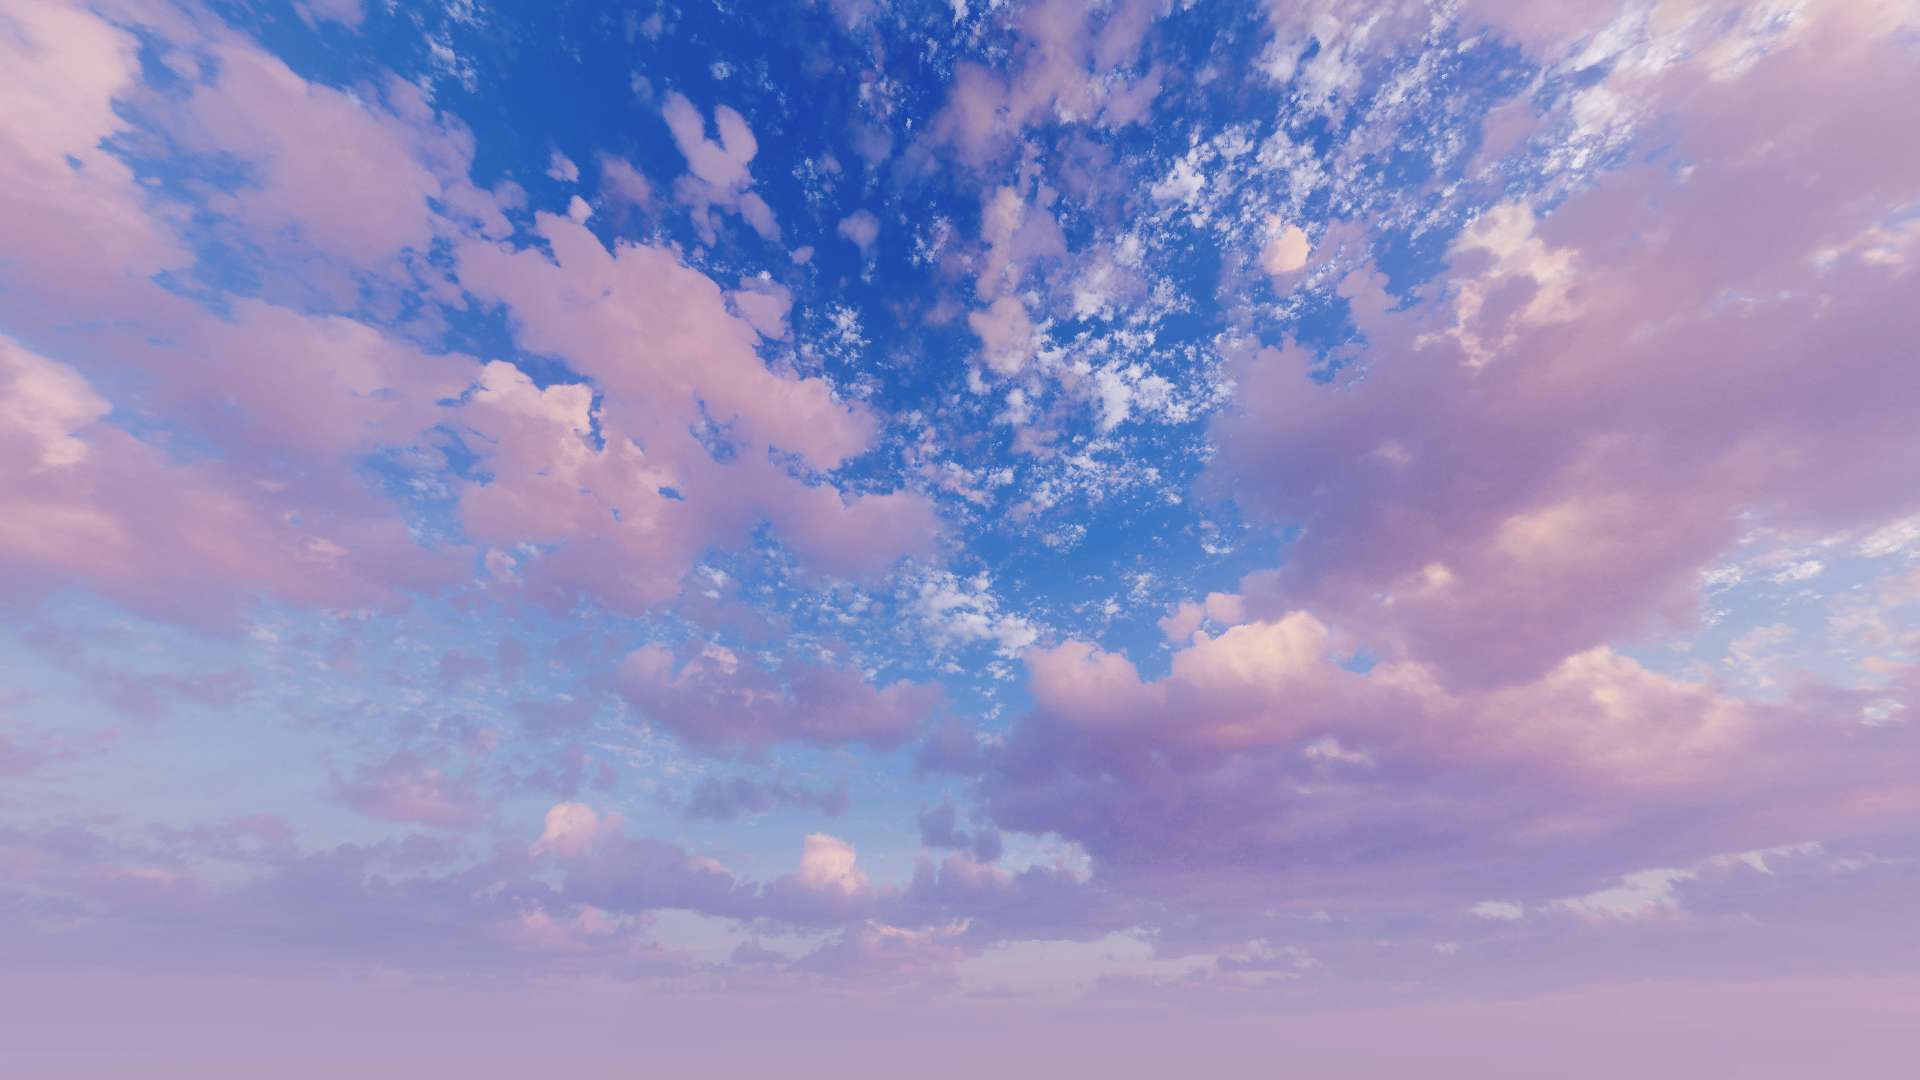 Pink sky - Hãy chiêm ngưỡng bầu trời hồng tuyệt đẹp này - một cảnh tượng tuyệt vời của sự tình yêu và sự tràn đầy hy vọng! Đừng để lỡ hình ảnh liên quan đến từ khóa này để tận hưởng cảm giác thăng hoa.